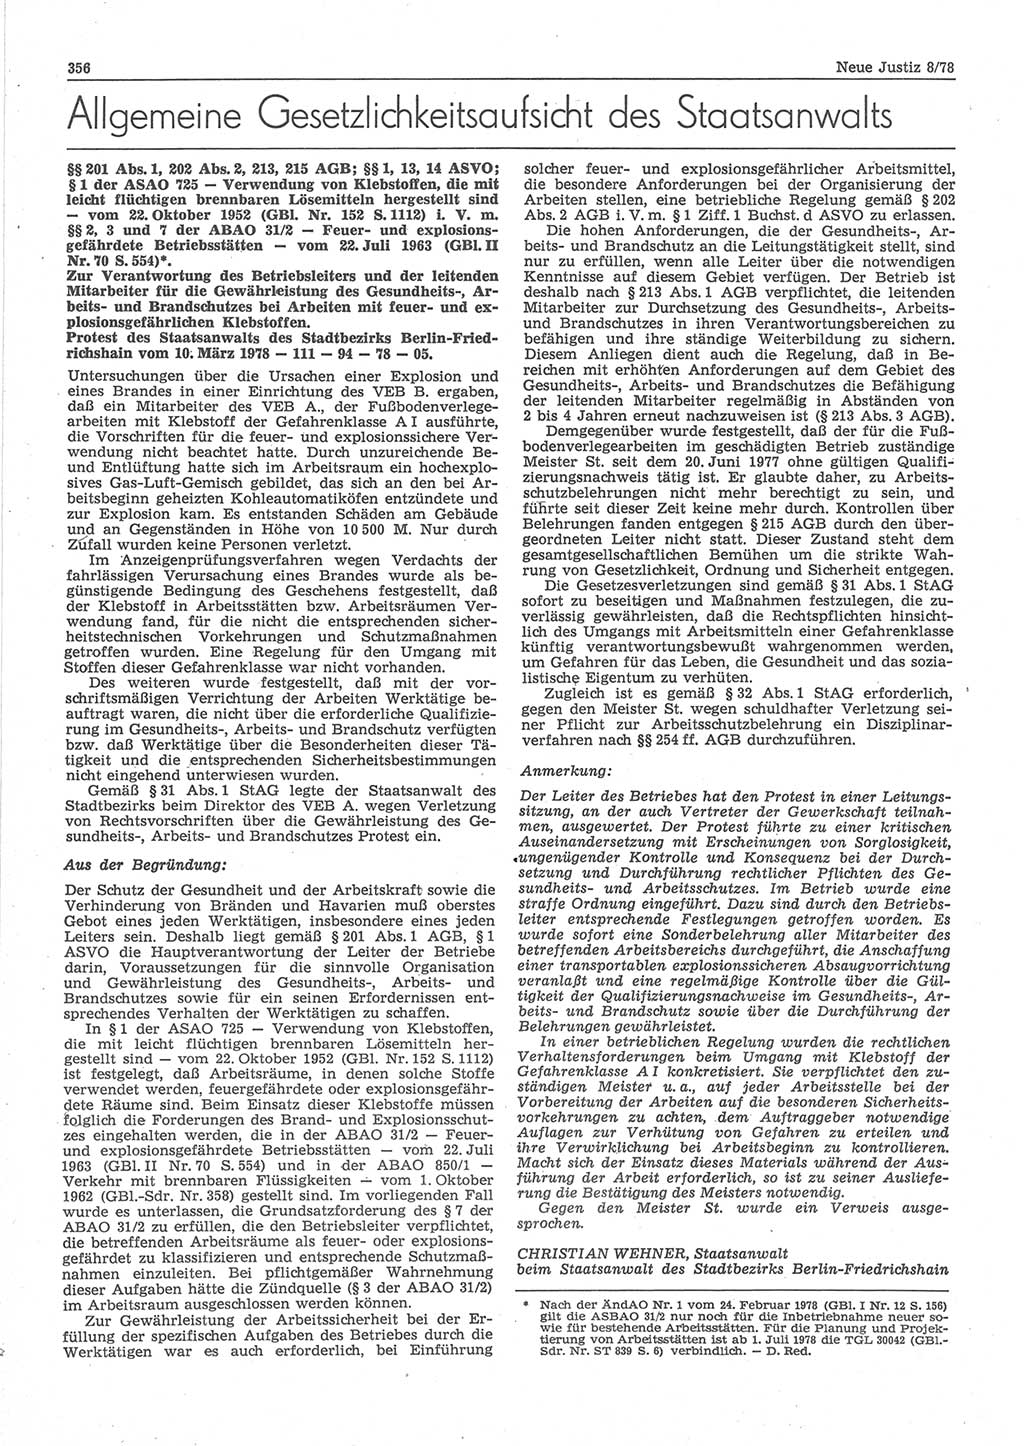 Neue Justiz (NJ), Zeitschrift für sozialistisches Recht und Gesetzlichkeit [Deutsche Demokratische Republik (DDR)], 32. Jahrgang 1978, Seite 356 (NJ DDR 1978, S. 356)